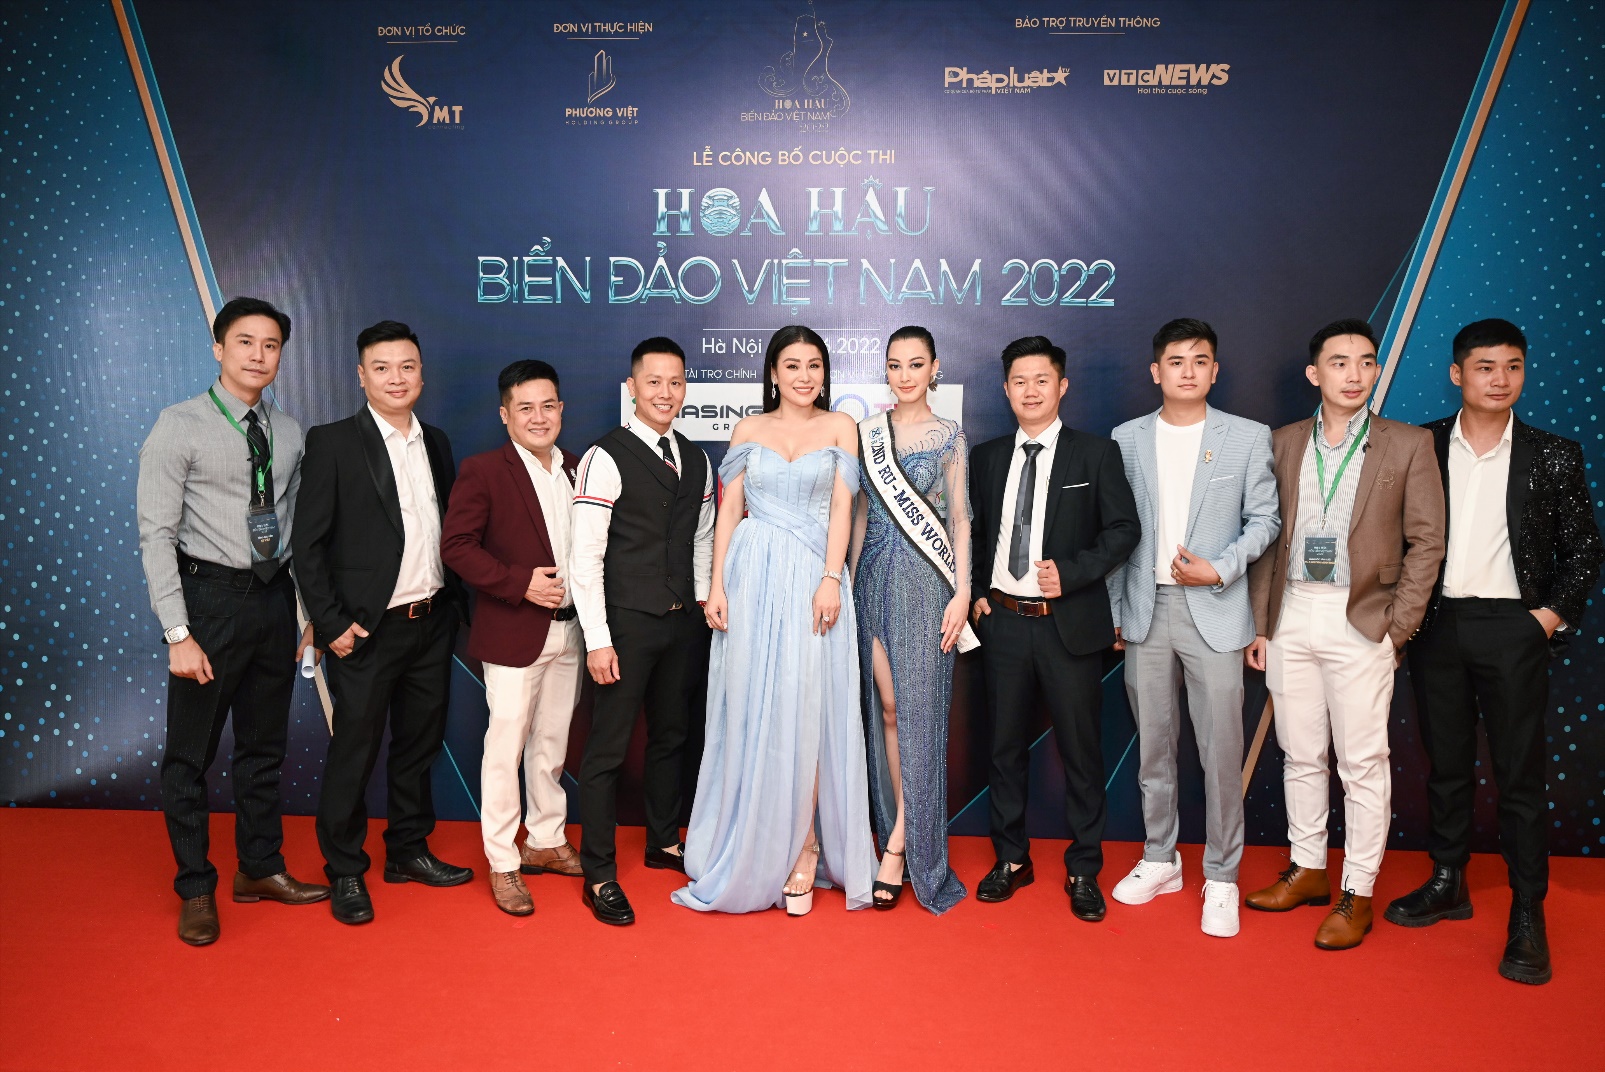 Hoa hậu Biển Đảo Việt Nam 2022: Trưởng ban tổ chức Đàm Hương Thủy và những tâm huyết dành cho chương trình - Ảnh 5.